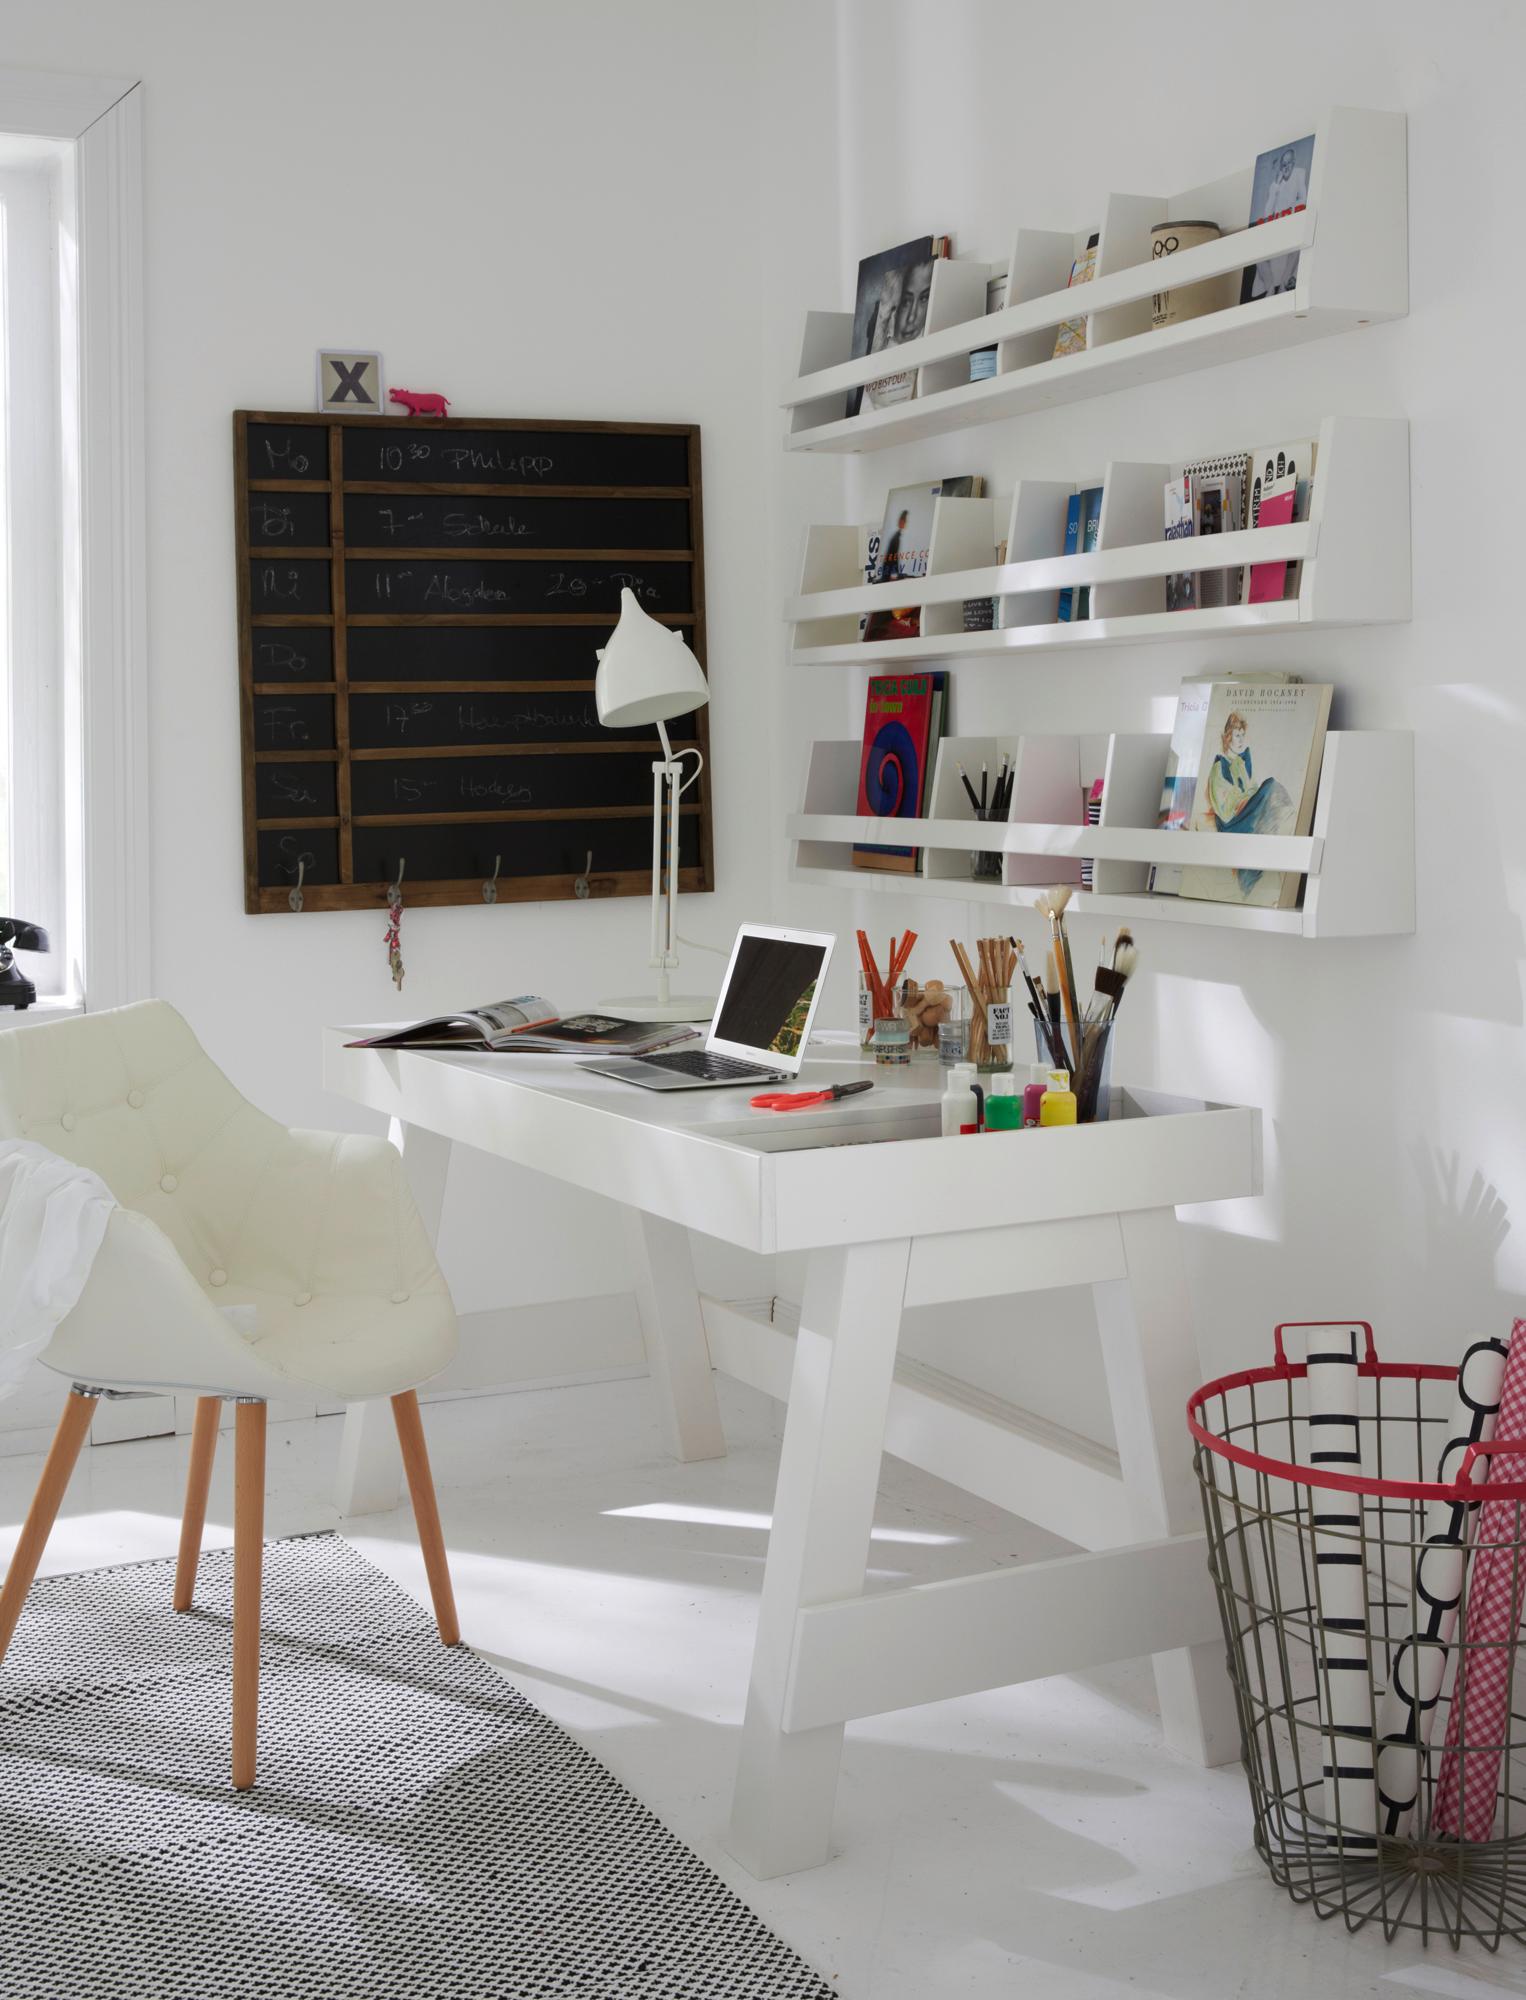 Schreibtisch mit integrierter Ablagefläche #stuhl #schreibtisch #arbeitsecke #schreibtischablage #arbeitszimmergestalten ©Car Selbstbaumöbel